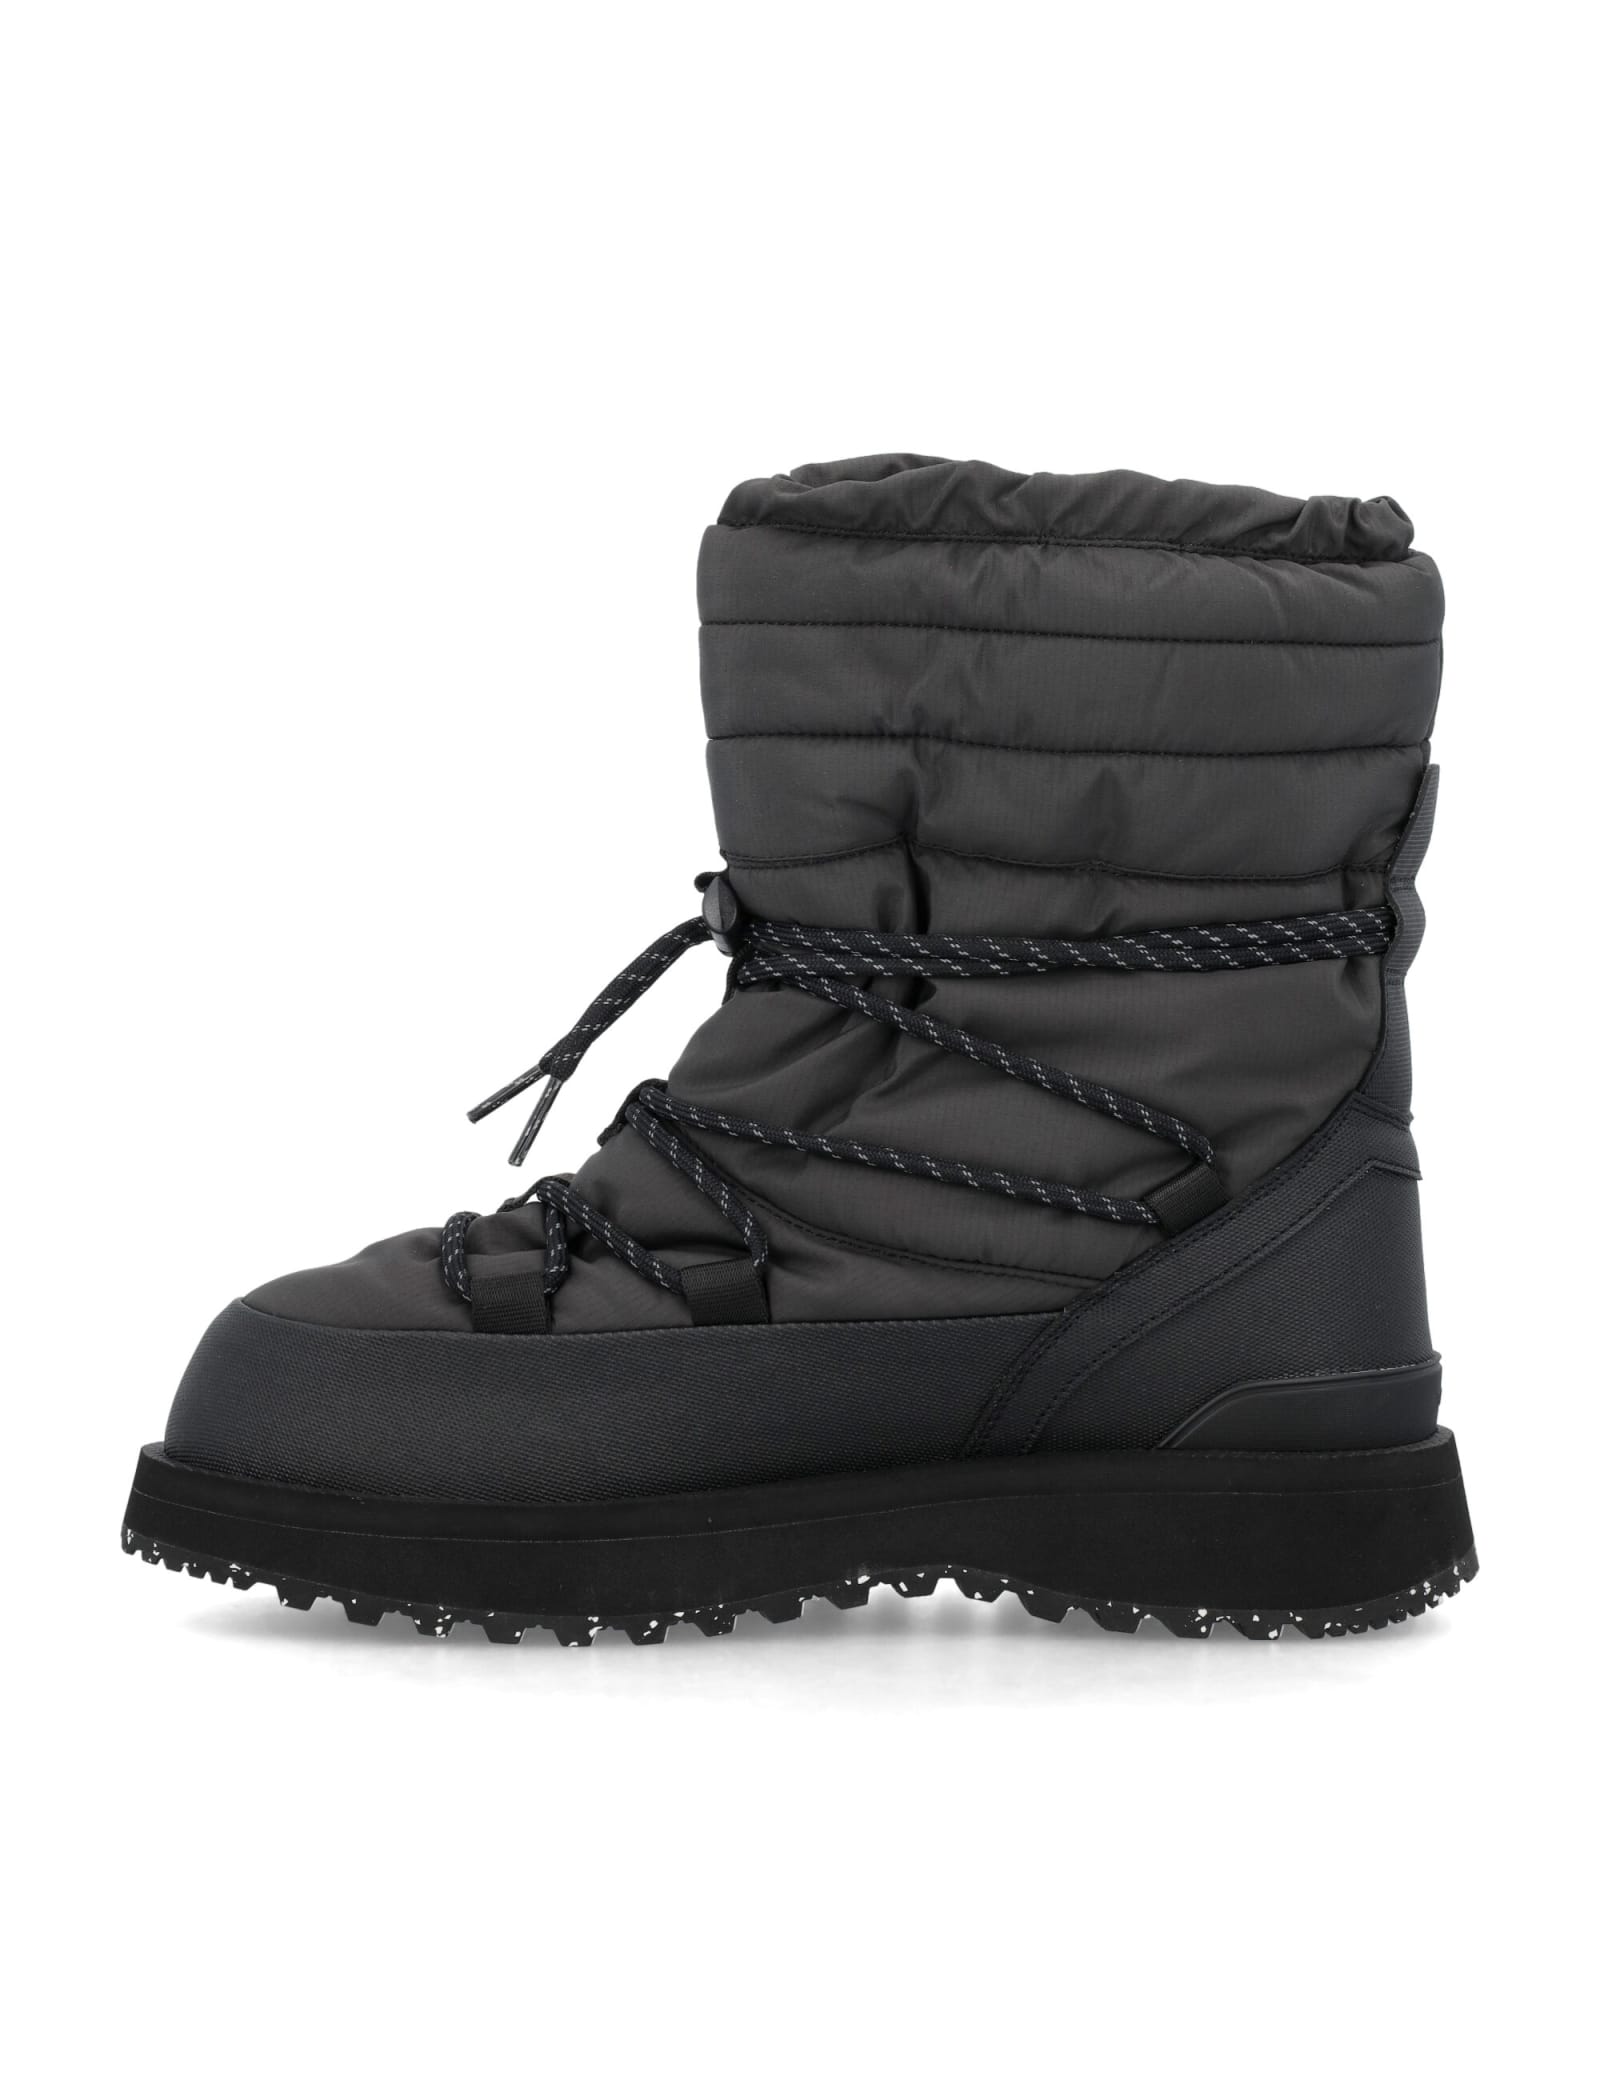 Shop Suicoke Bower-evab Hi-lace Boots In Black